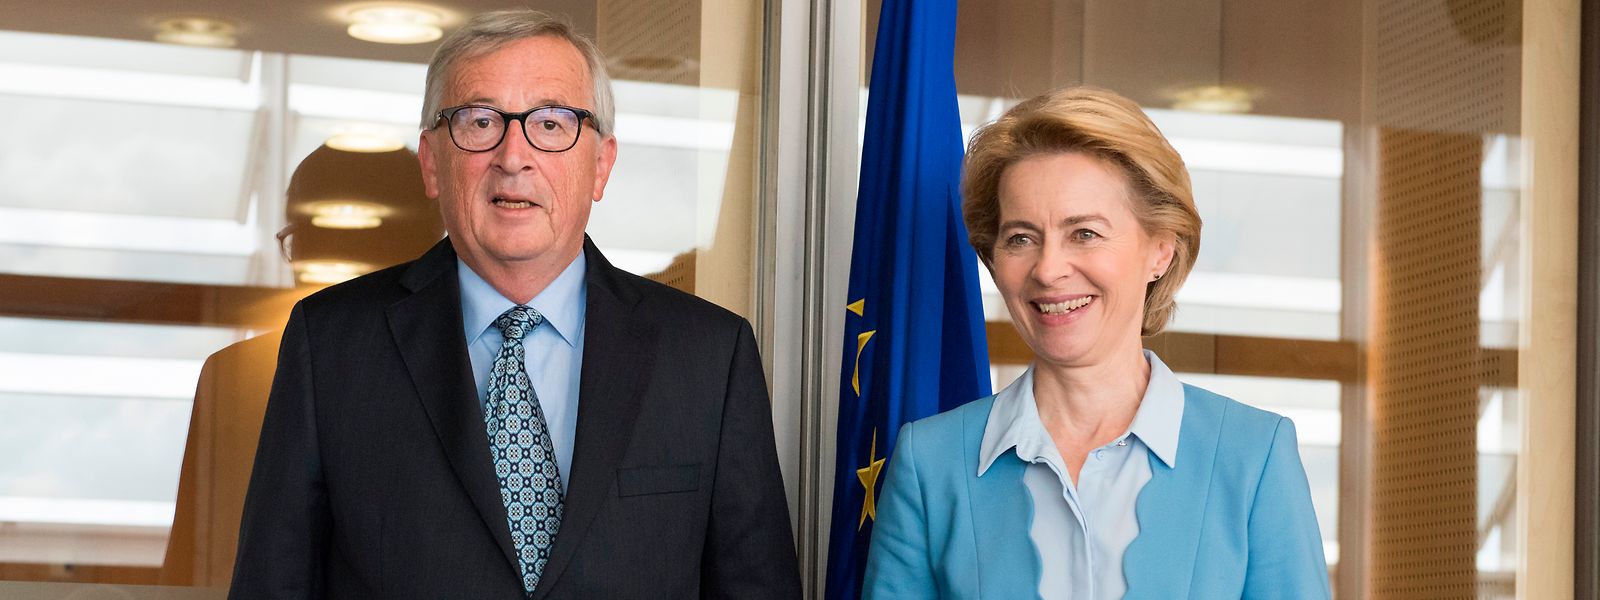 La validation officielle, lundi, du candidat hongrois doit permettre à la Commission von der Leyen de prendre la suite de celle dirigée par Jean-Claude Juncker au 1er décembre prochain.